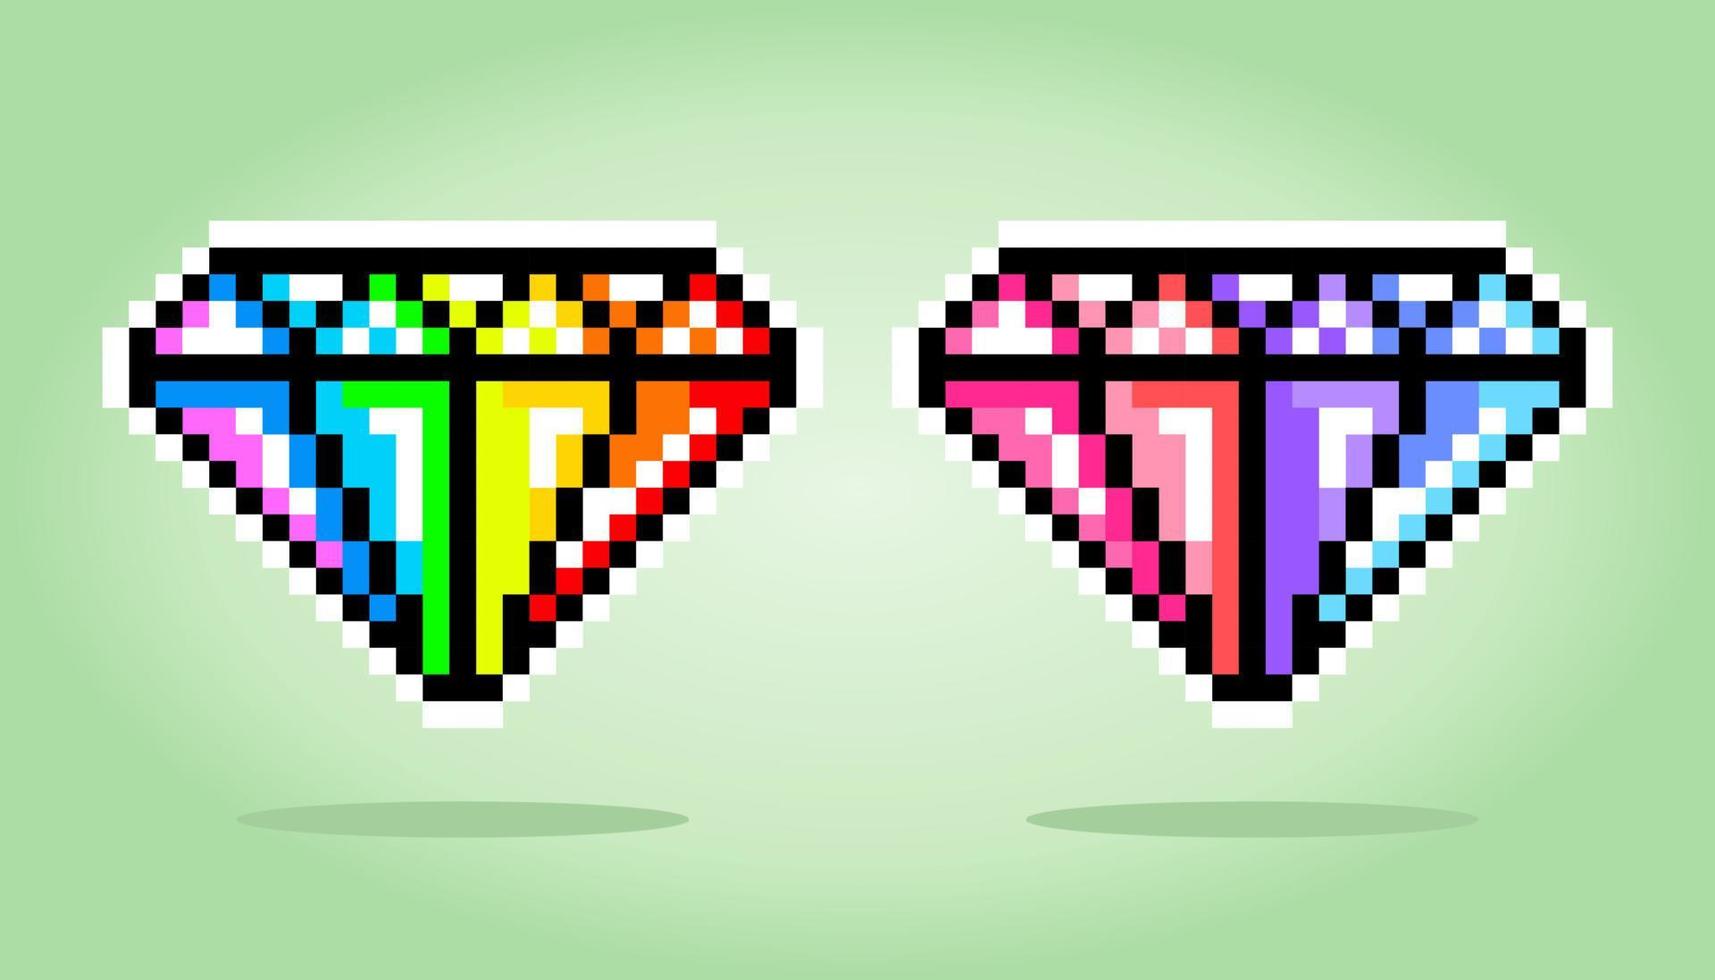 píxel diamante arcoíris de 8 bits. objek item untuk juego activo dalam ilustrasi vektor. vector